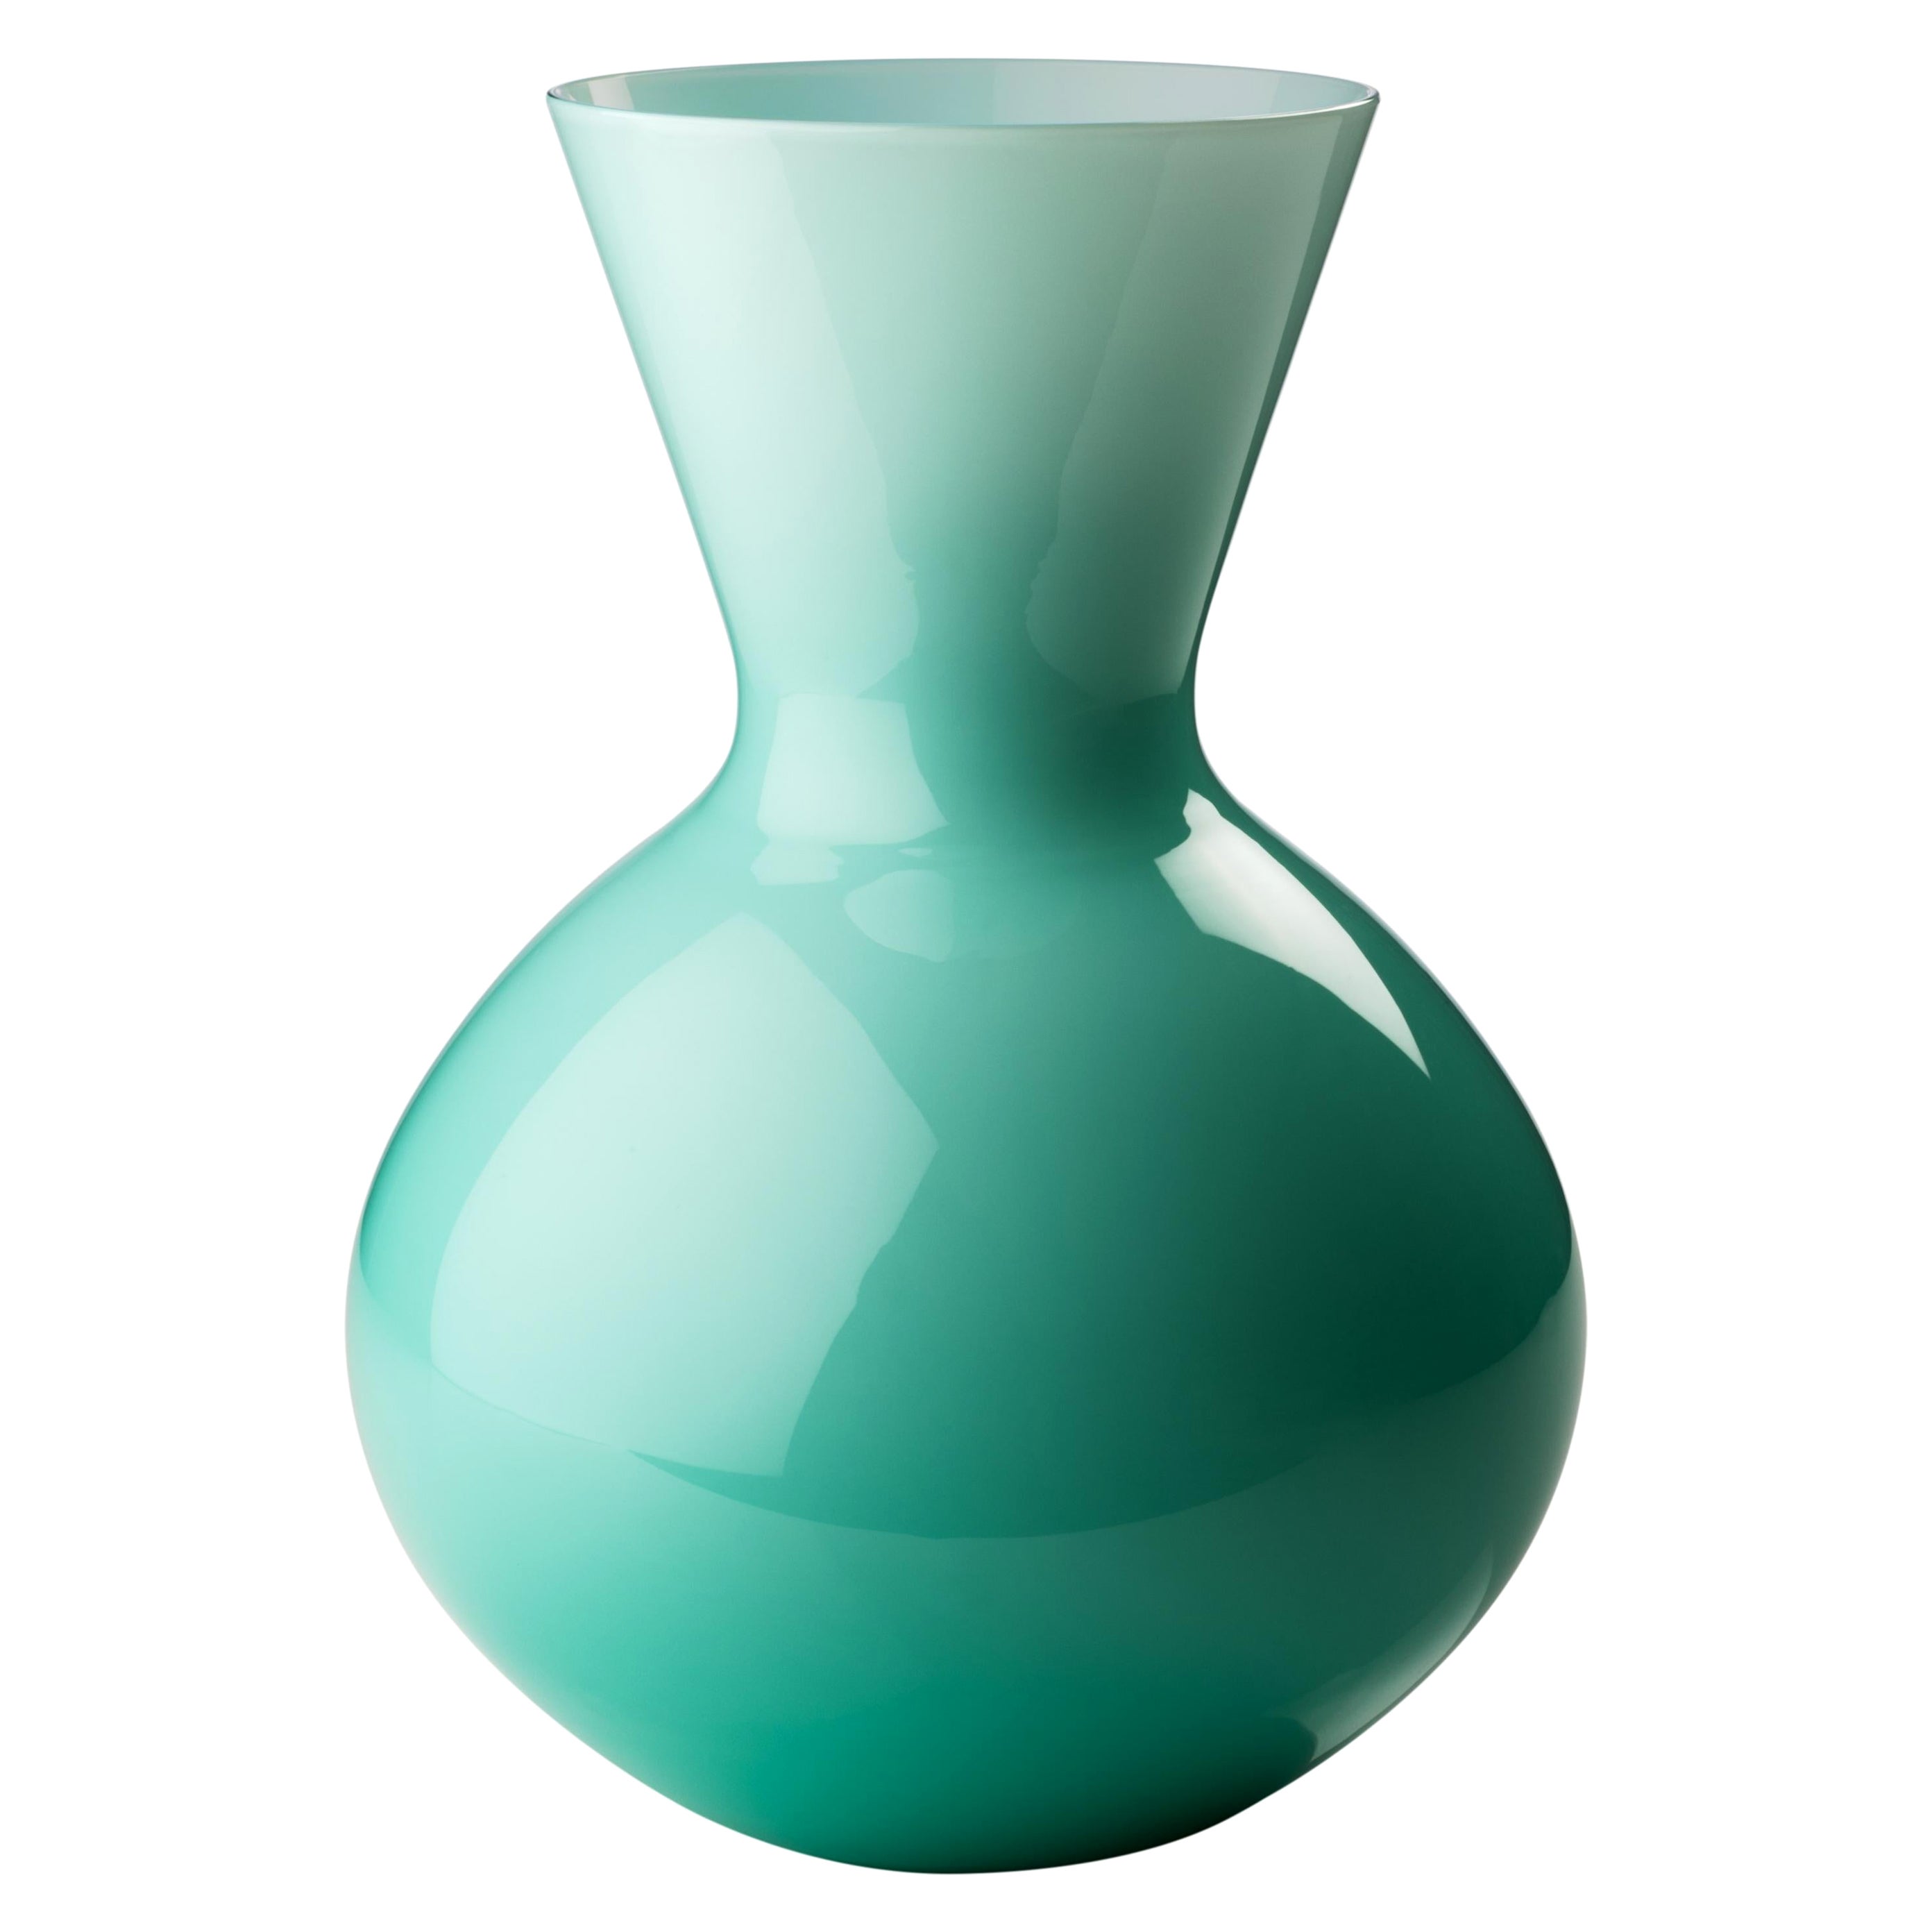 Grand vase rond en verre Idria vert menthe de Venini